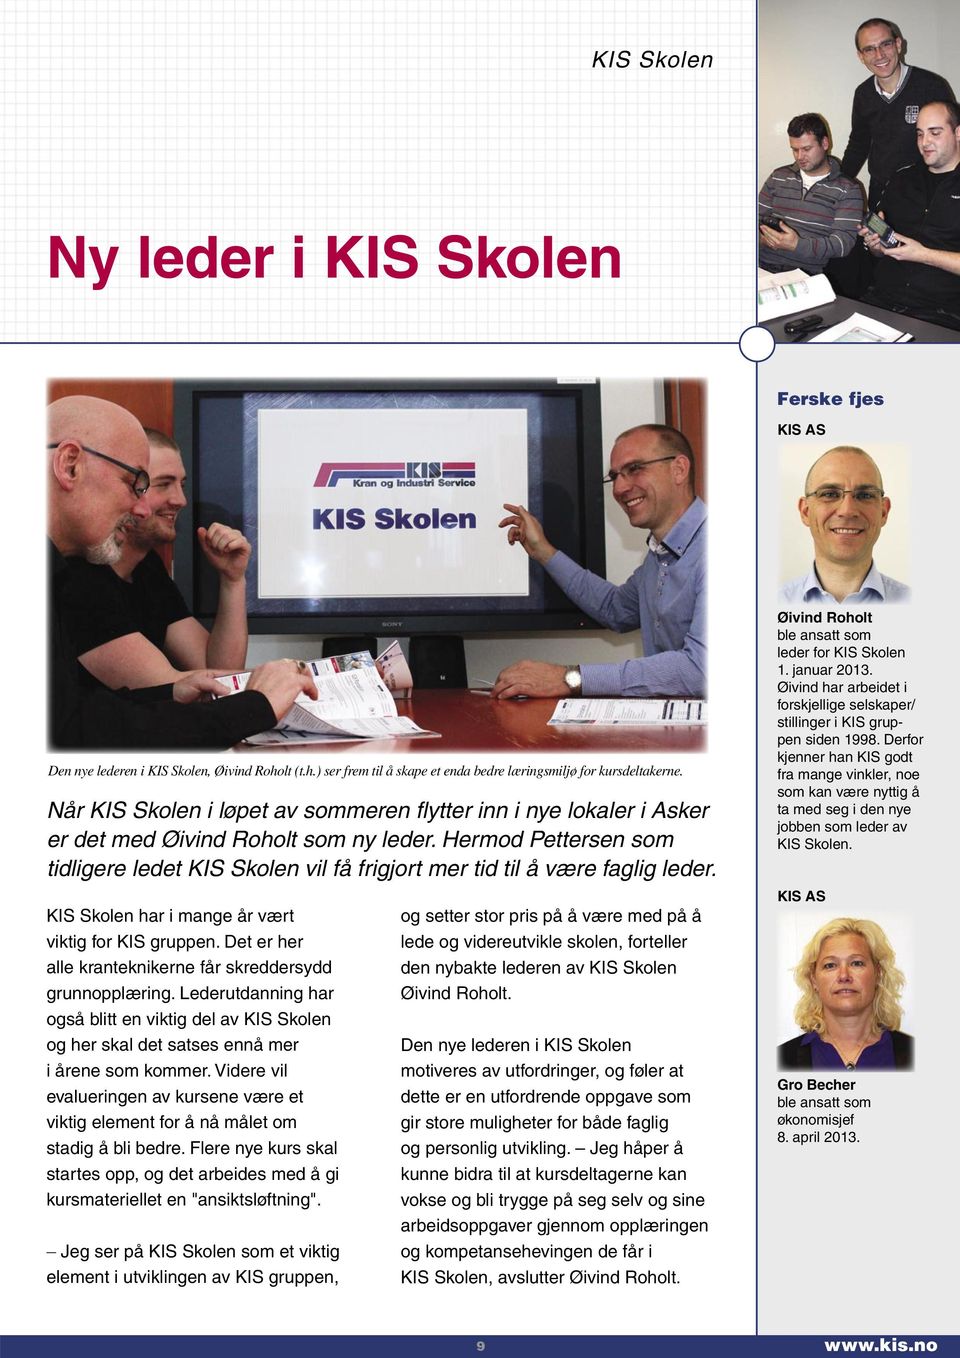 Hermod Pettersen som tidligere ledet KIS Skolen vil få frigjort mer tid til å være faglig leder. KIS Skolen har i mange år vært viktig for KIS gruppen.